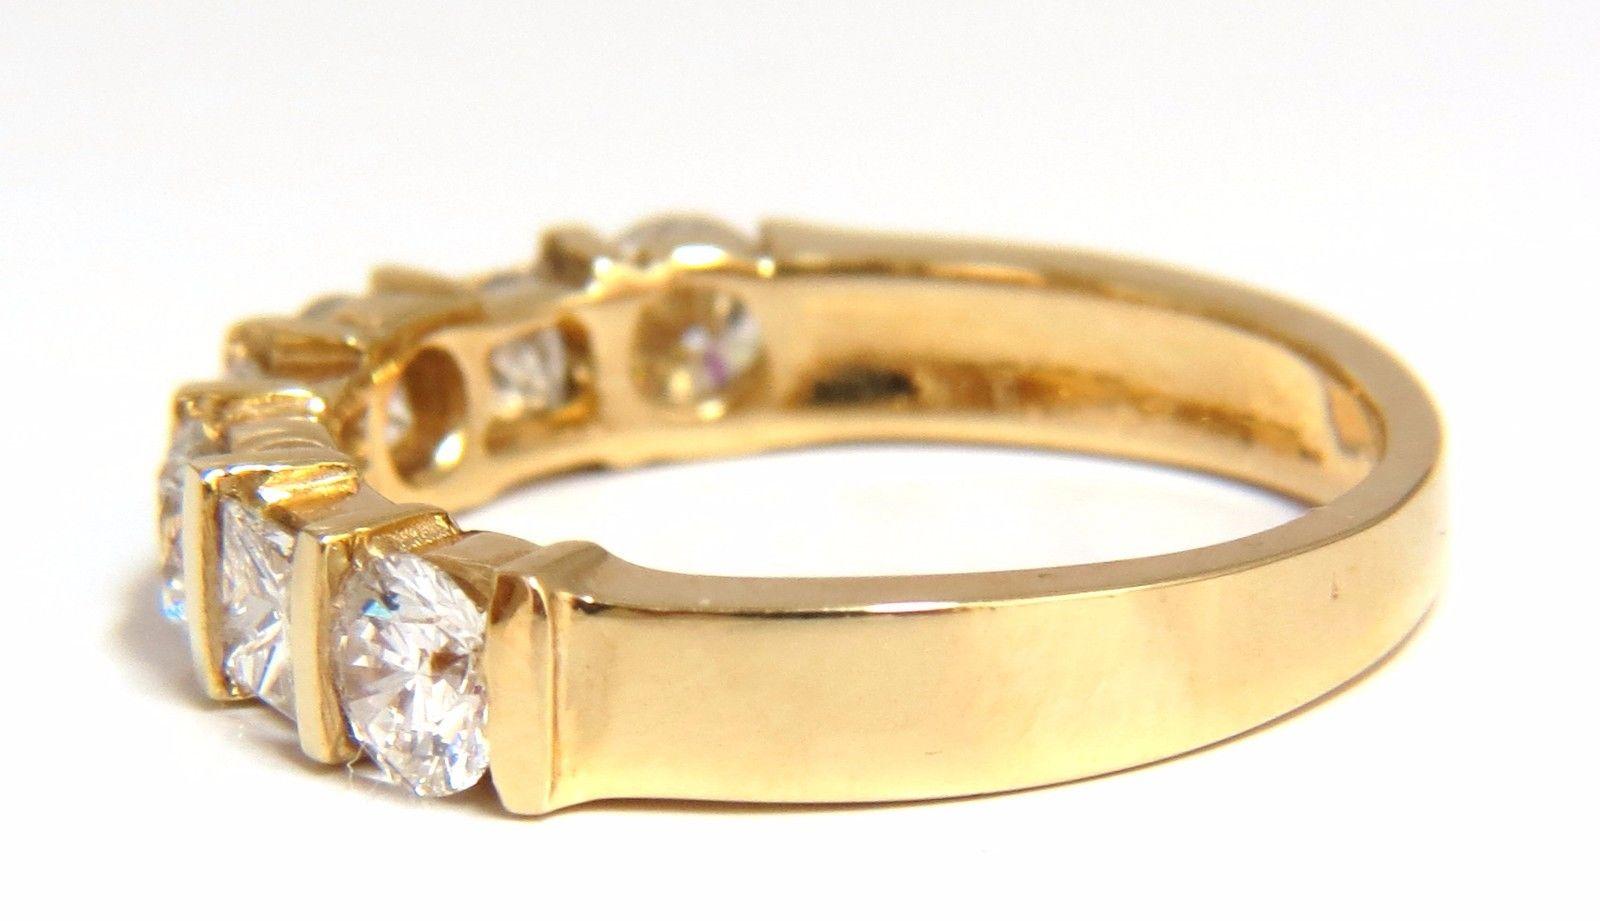 Kanal Prinzessin & Rundungen

1.40ct. Ring mit natürlichen Diamanten

G-Farbe Vs-2 Klarheit 

Sehr gute Schnitte / Vollschnittbrillanten

14kt Gelbgold

Ringgröße: 6.25

(Kostenfreie Größenänderung möglich)

Ring ist 3,8 mm breit

2.6 mm